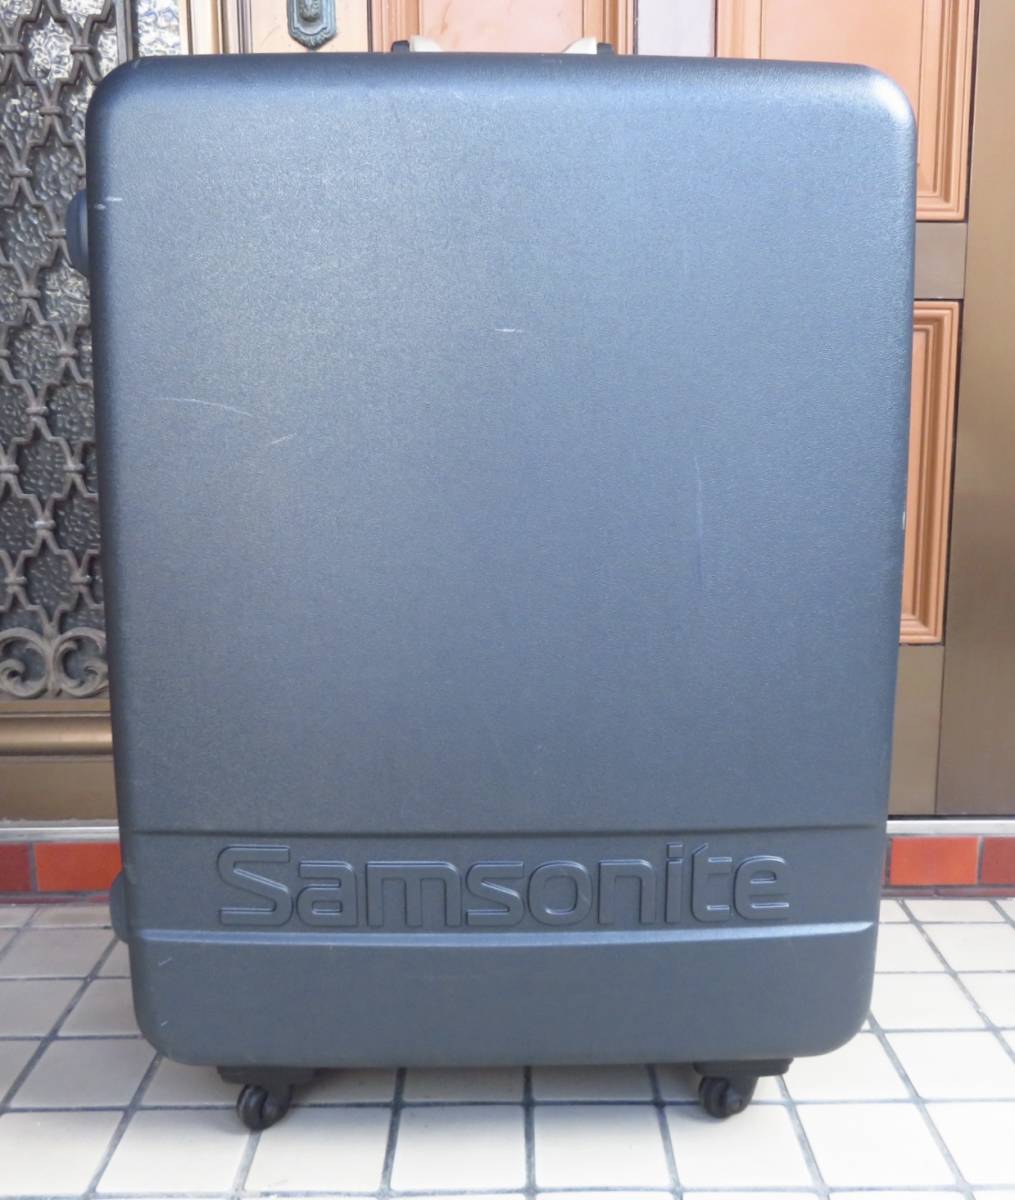 samsonite サムソナイト キャリーバッグ スーツケース 旅行用 トラベルバッグ 横57cm 高さ87cm 厚さ24cm